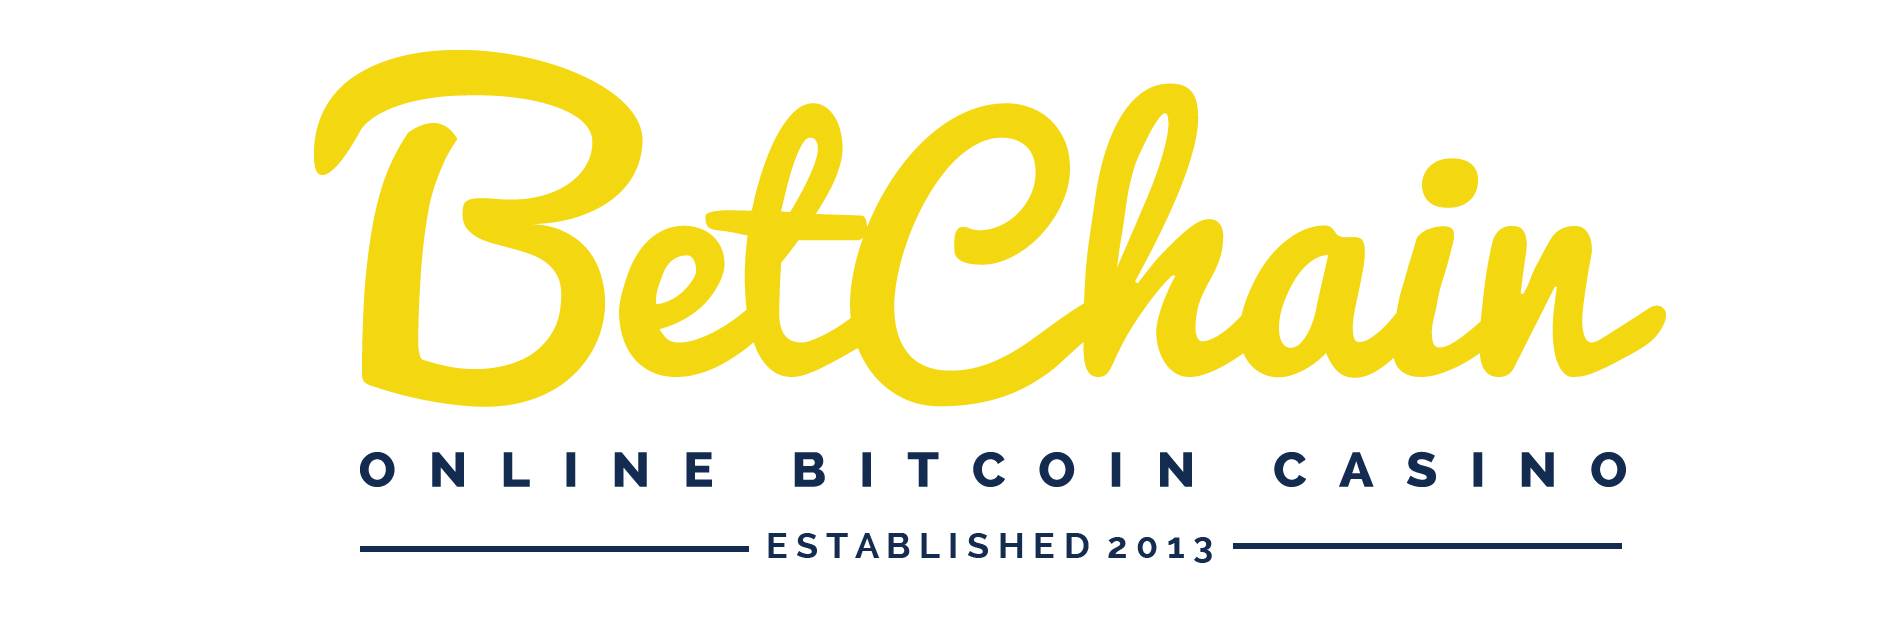 BetChain estte o destinatie populara de pariuri cu Bitcoin și monede alternative